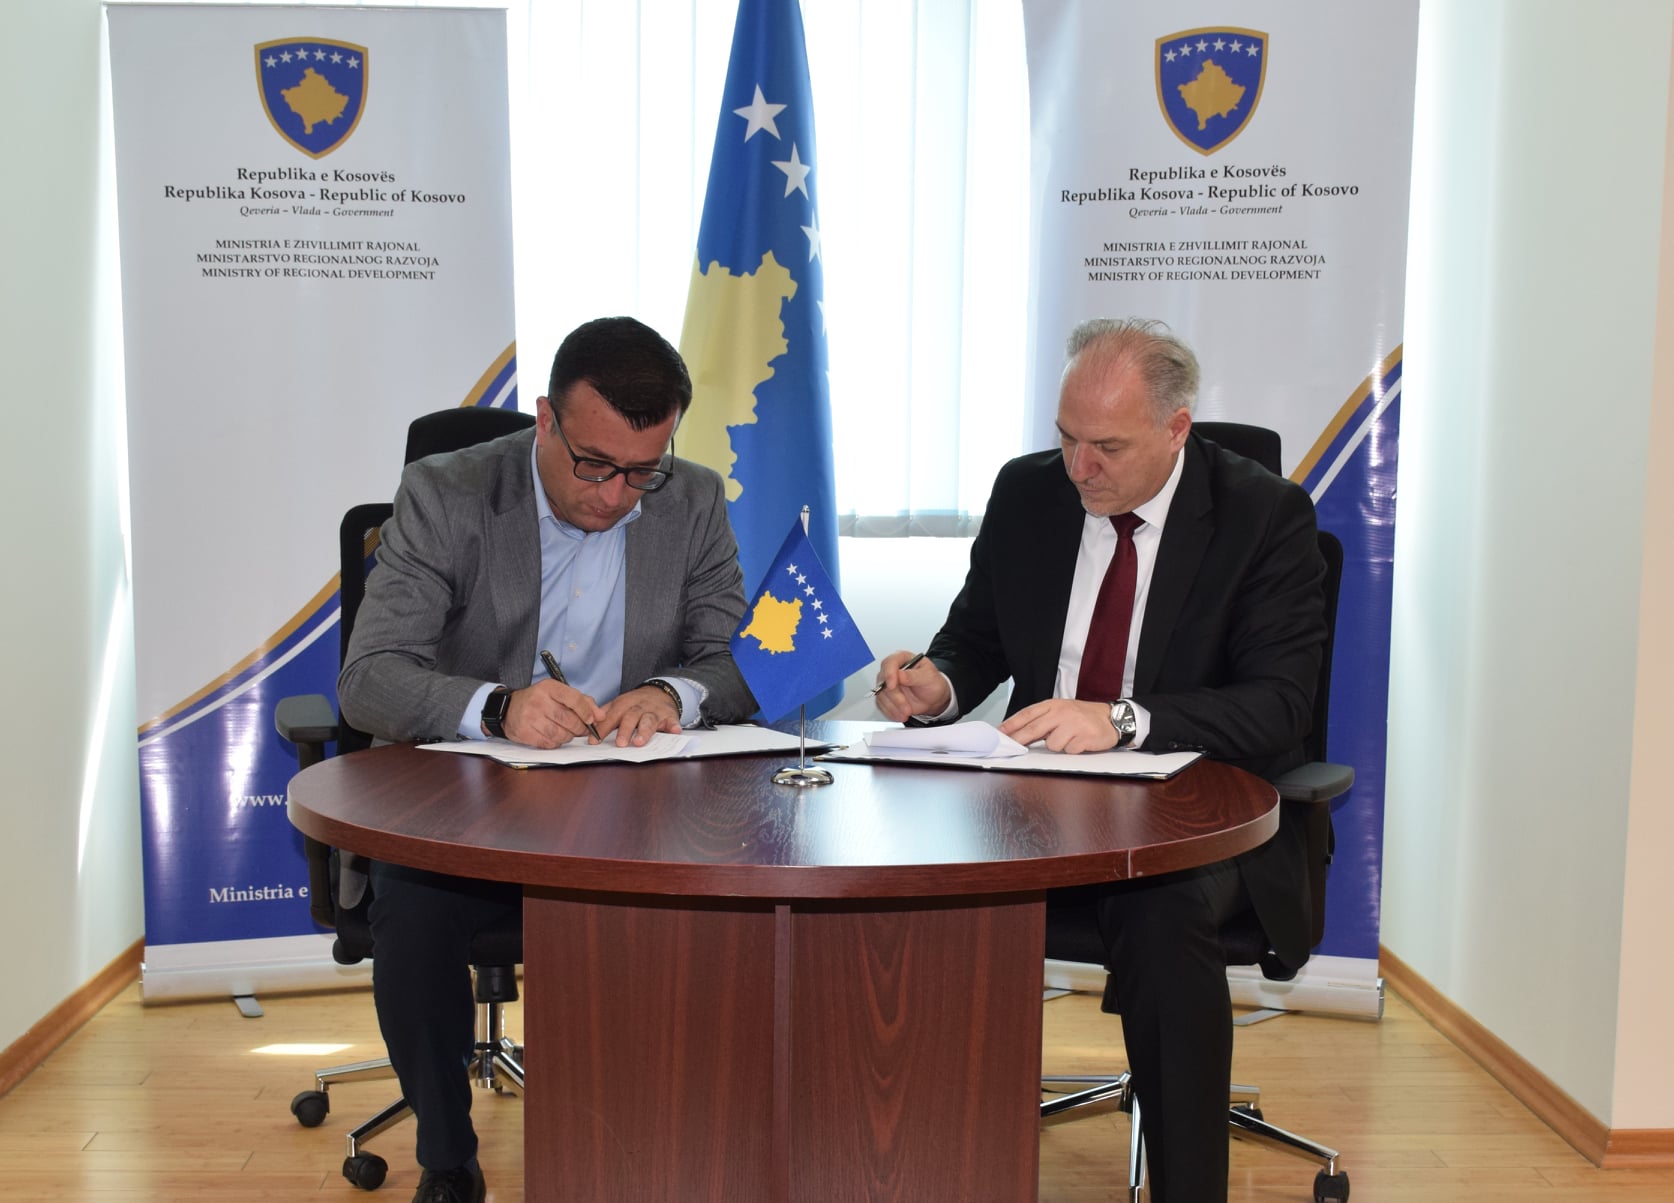 Ministria e Zhvillimit Rajonal nënshkruan Marrëveshjen e Mirëkuptimit me komunën përfituese të Istogut në kuadër të Programit për Zhvillim Rajonal PZHR 2022